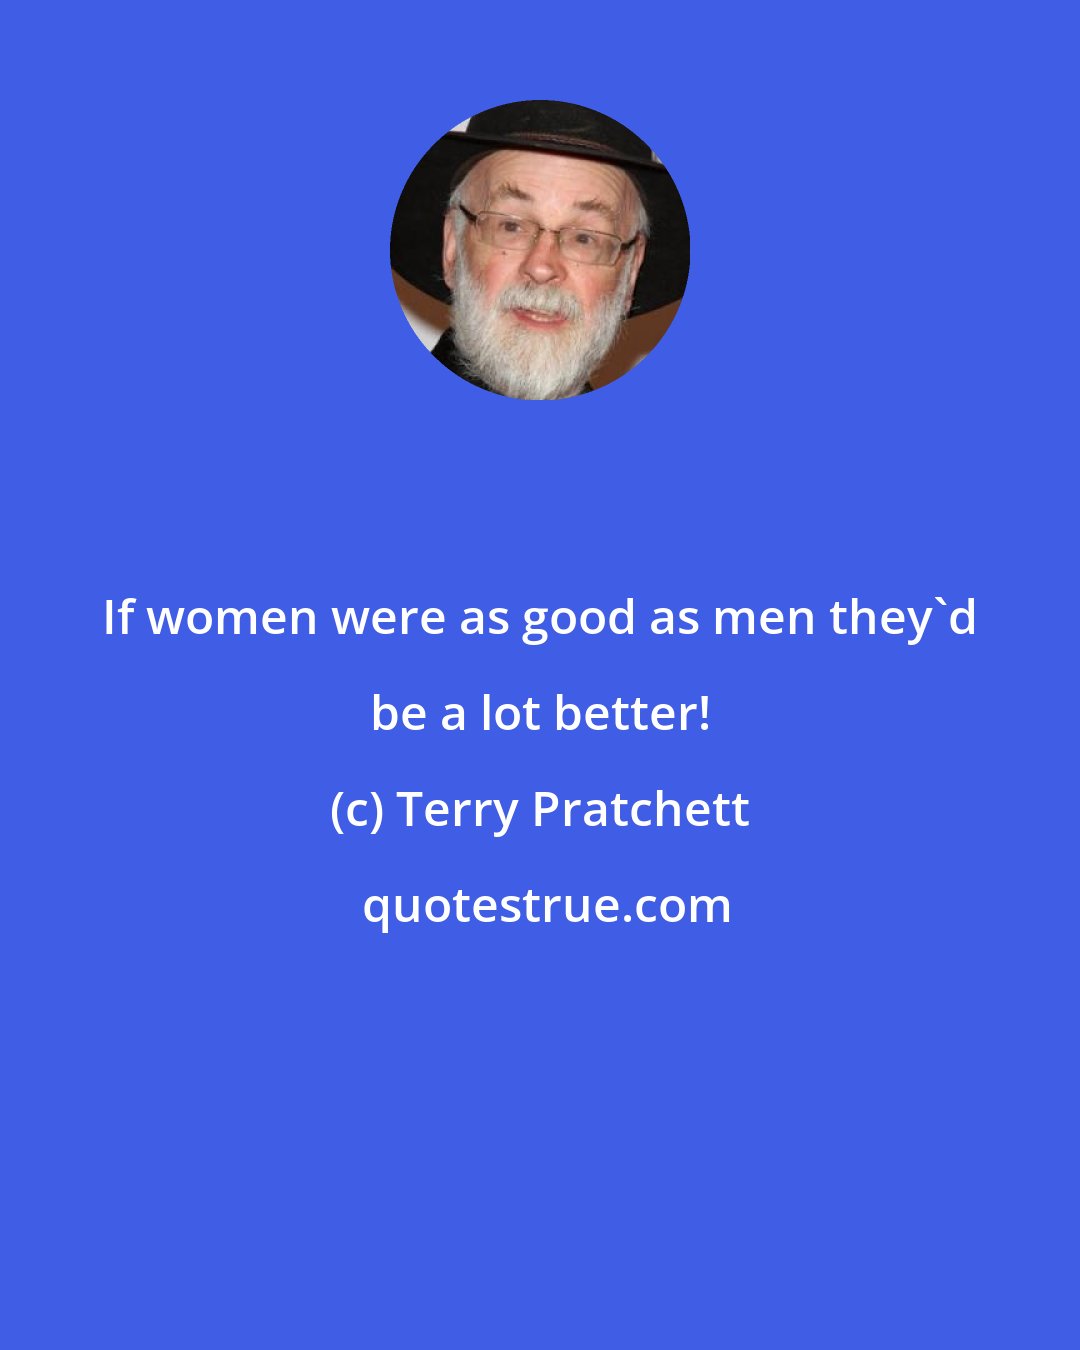 Terry Pratchett: If women were as good as men they'd be a lot better!